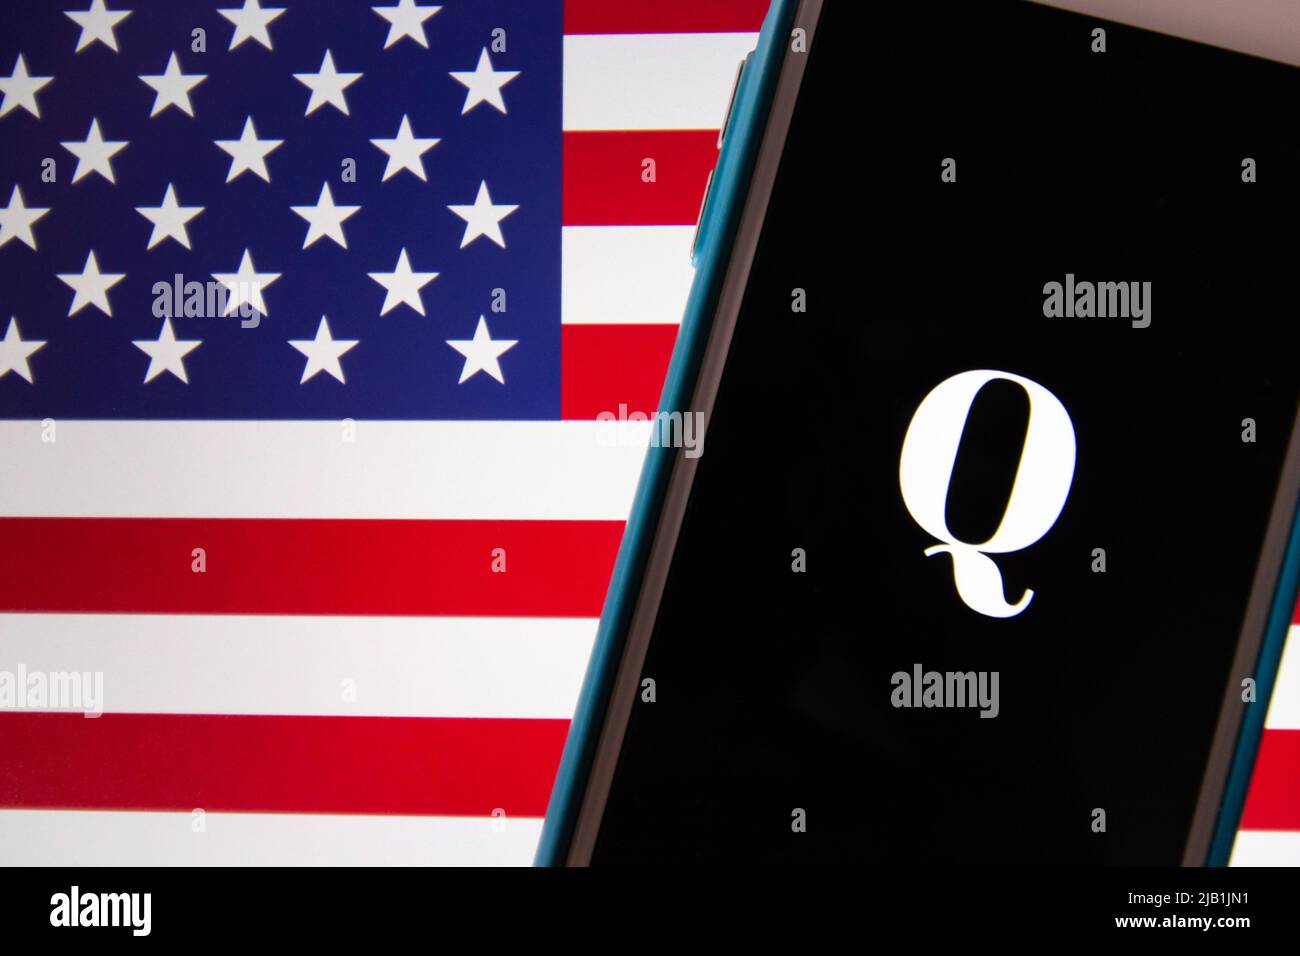 Kumamoto, JAPON - octobre 20 2020 : logo Qanon sur iPhone avec arrière-plan drapeau américain. Qanon est un groupe de conspiration d'extrême-droite Banque D'Images